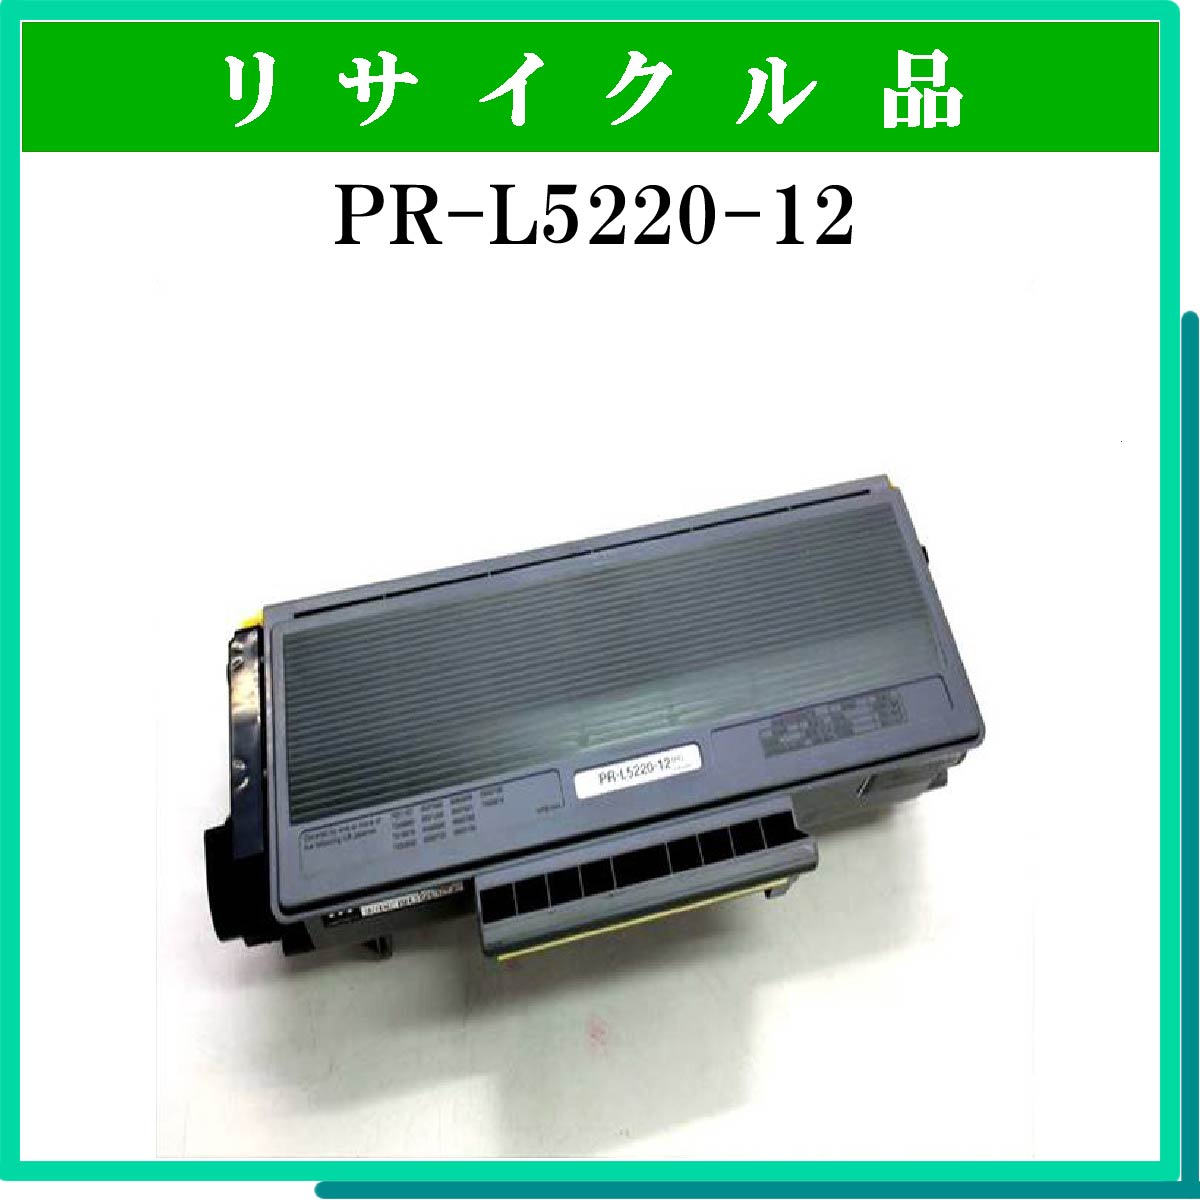 PR-L5220-12